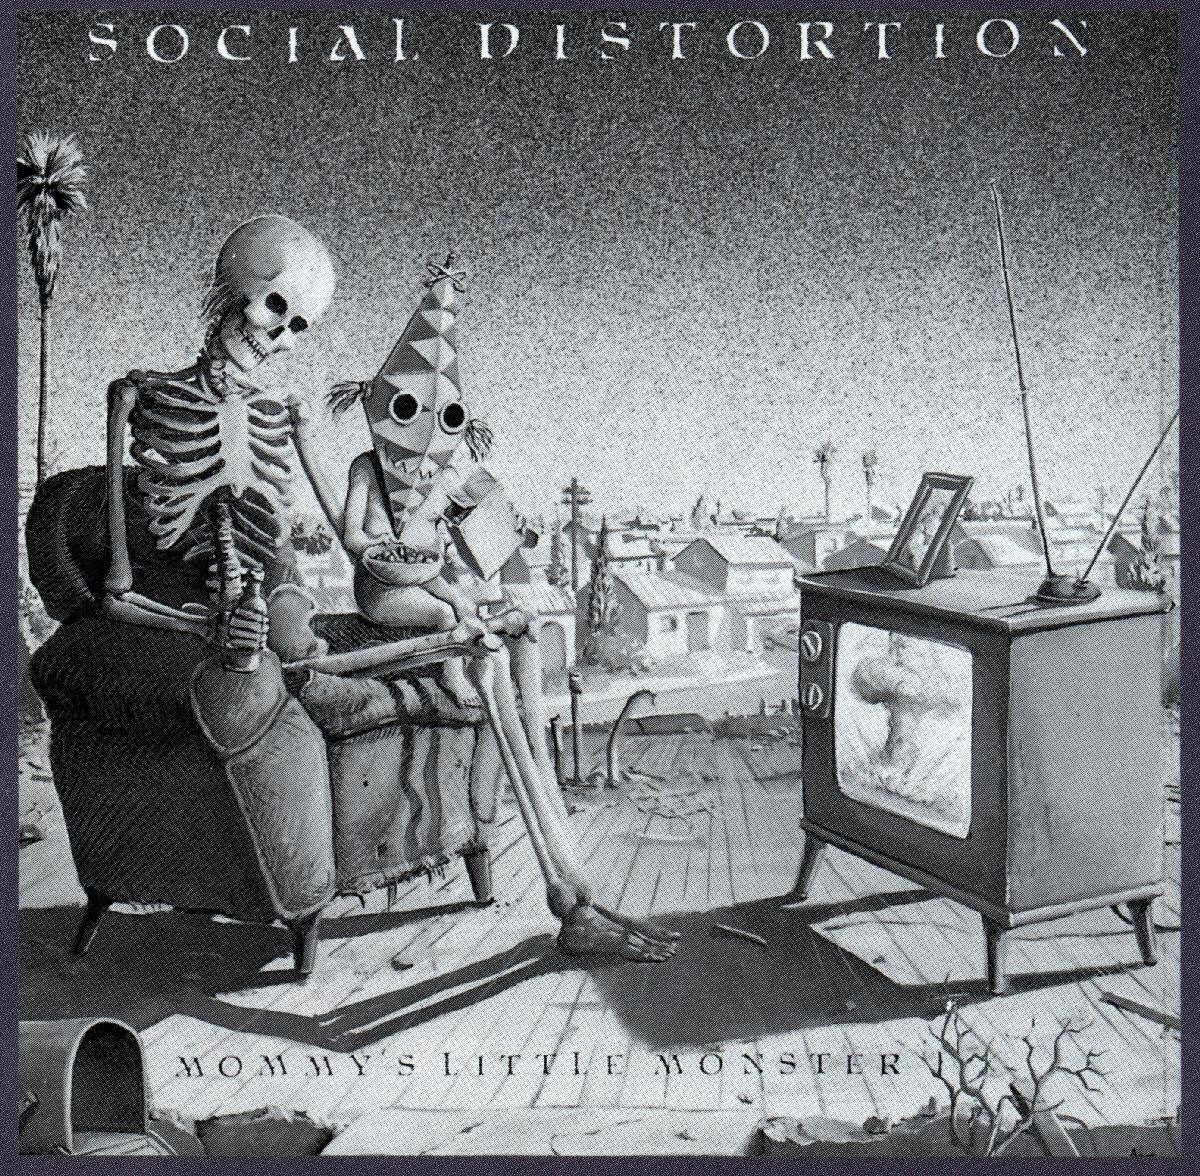 Social Distortion - Mommys Little Monster